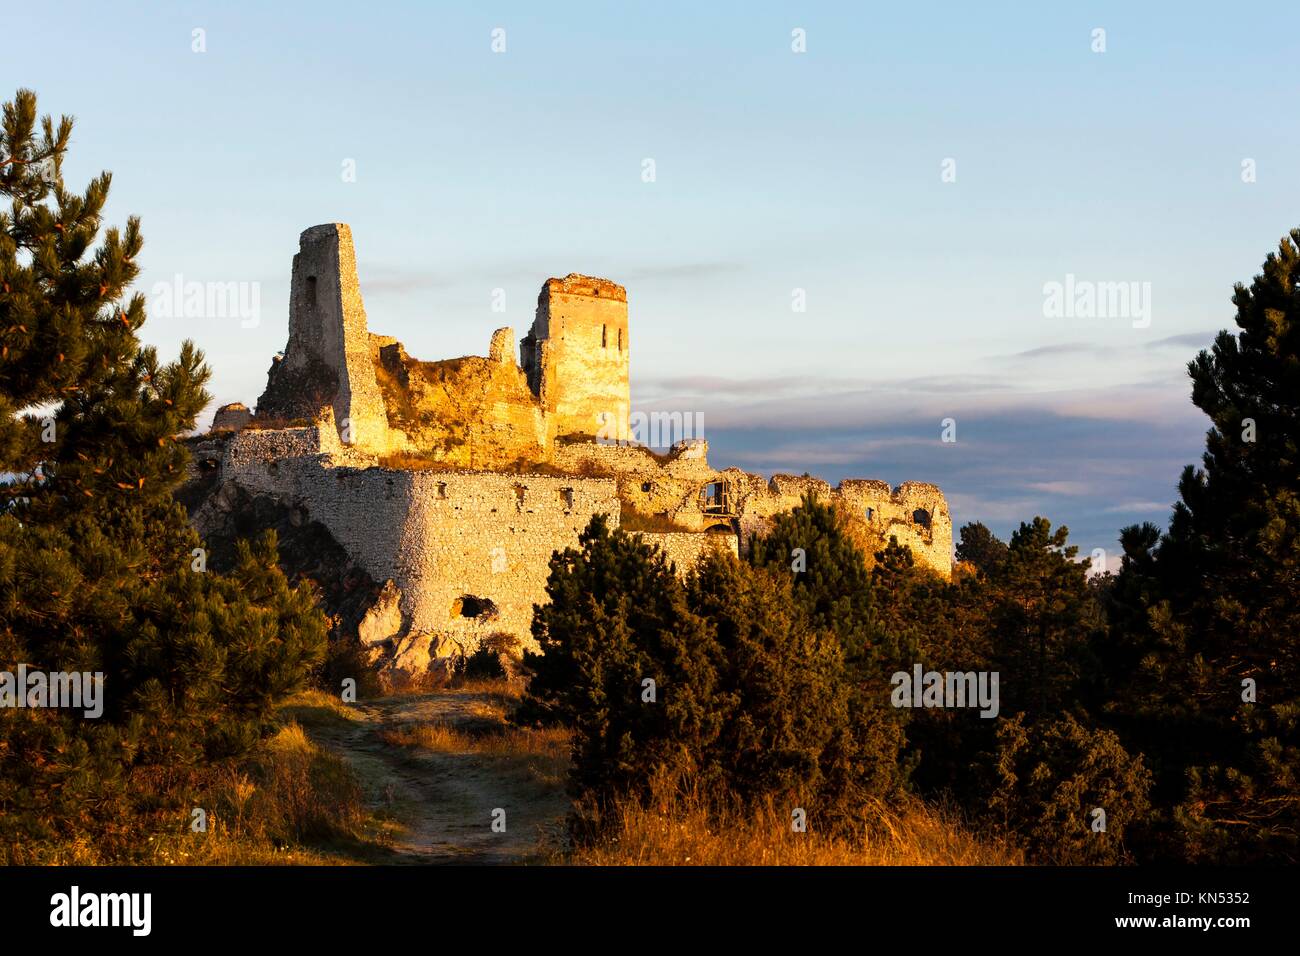 Ruines du château de Cachtice, la Slovaquie. Banque D'Images